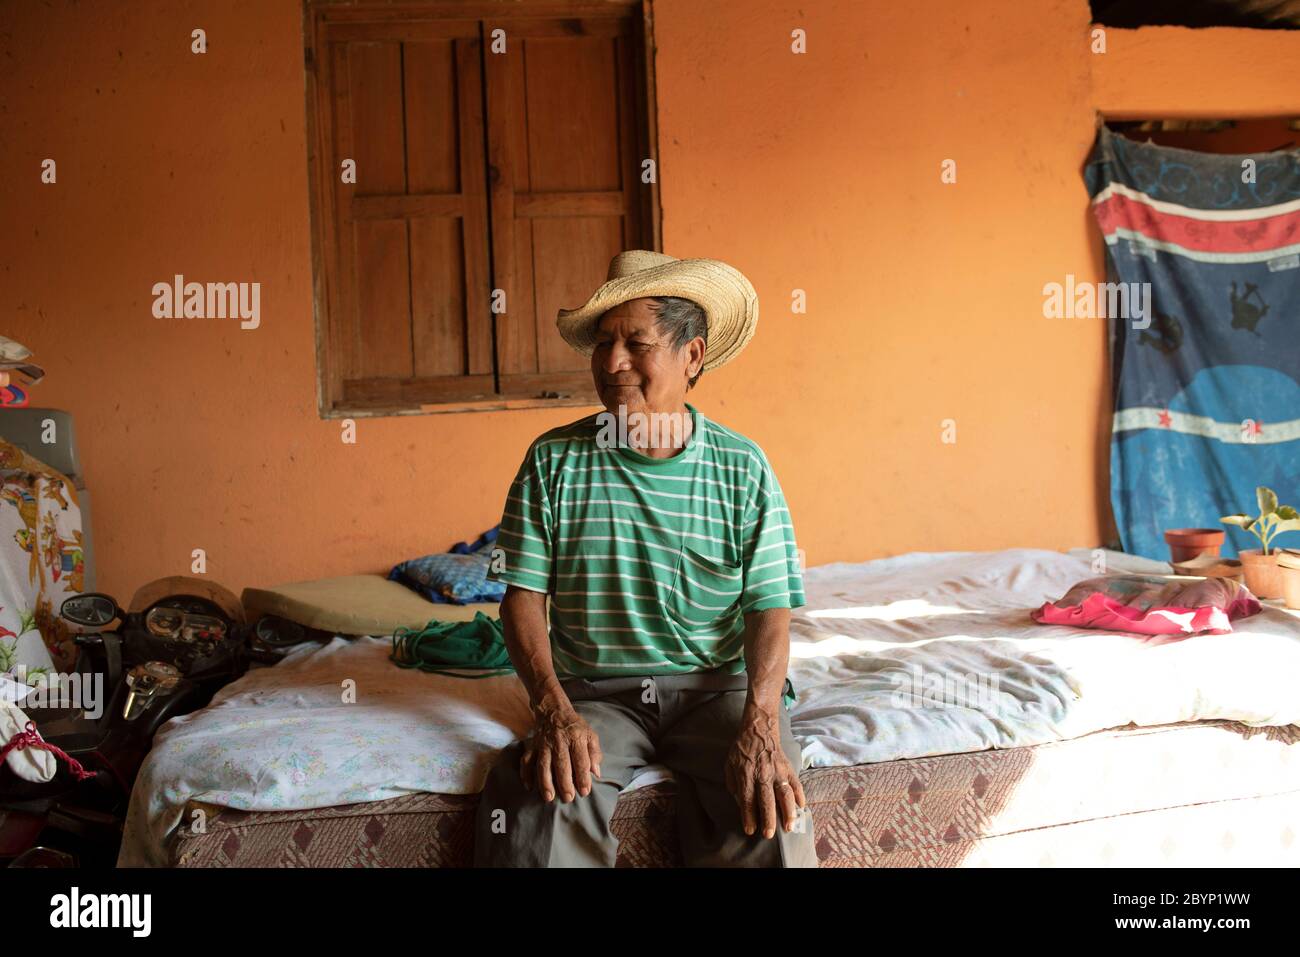 Portrait des Latino-Mannes, der nach der Siesta auf dem Bett sitzt (Mittagsschlaf). Alltag in El Paredón, Guatemala. Dezember 2018 Stockfoto